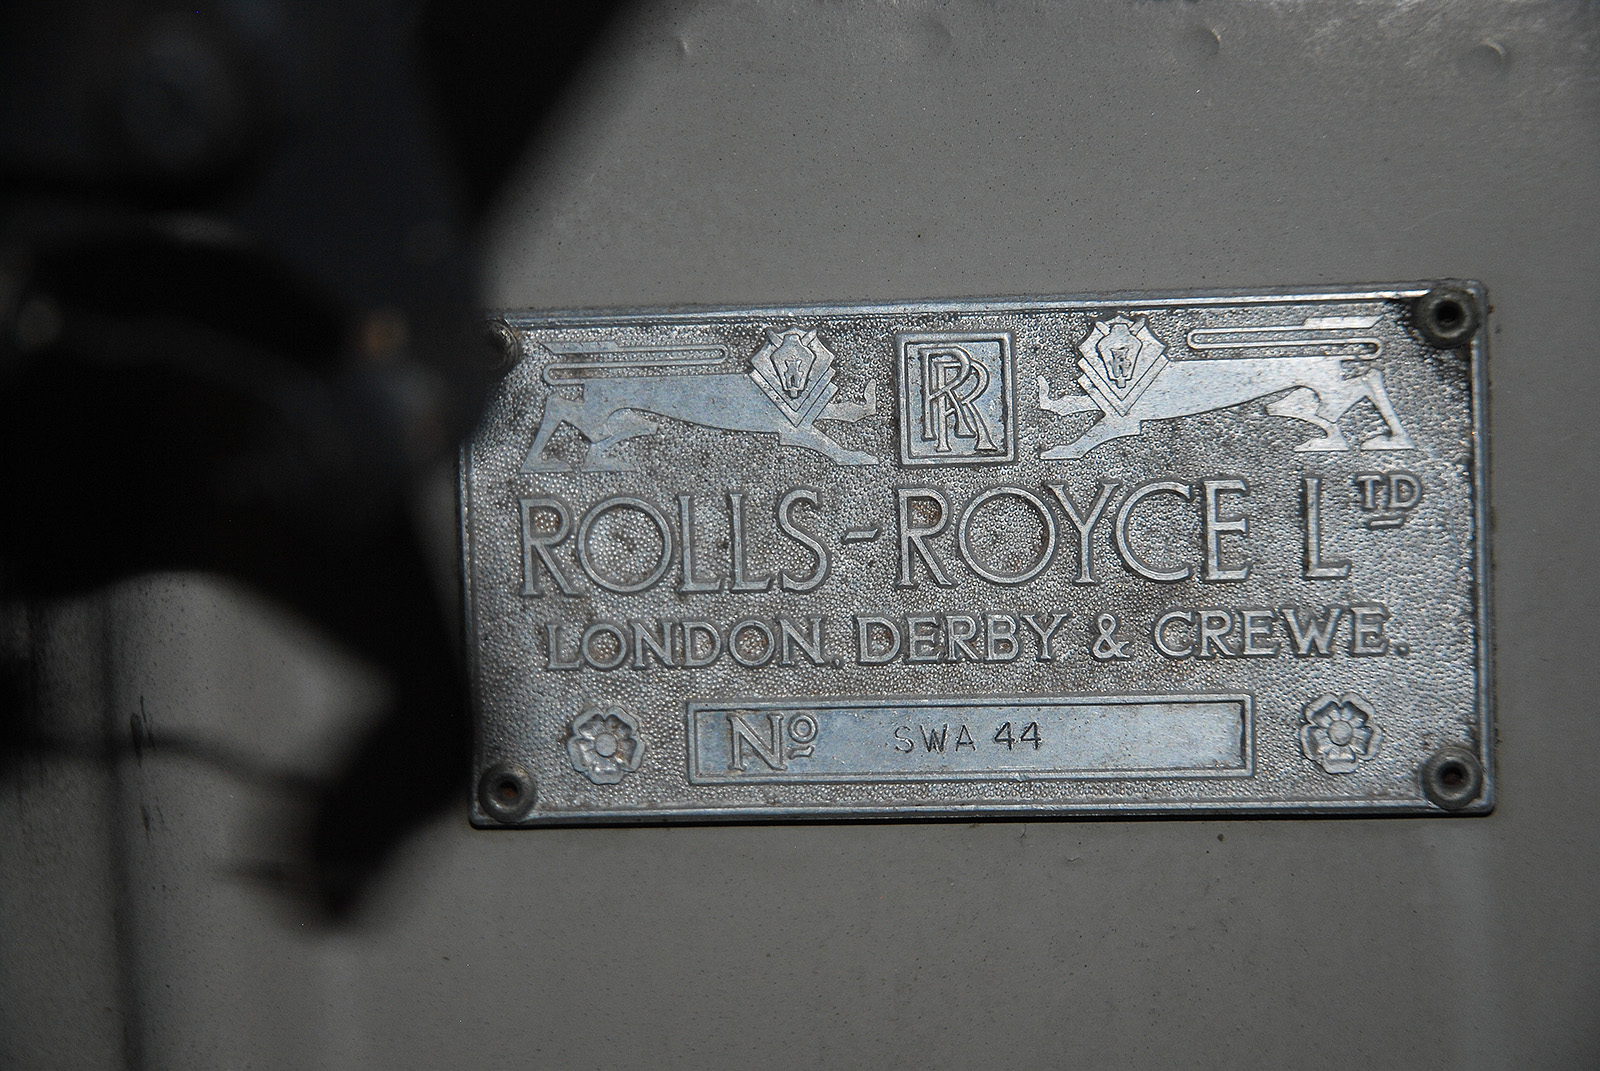 1955 rolls-royce silver cloud i standard steel